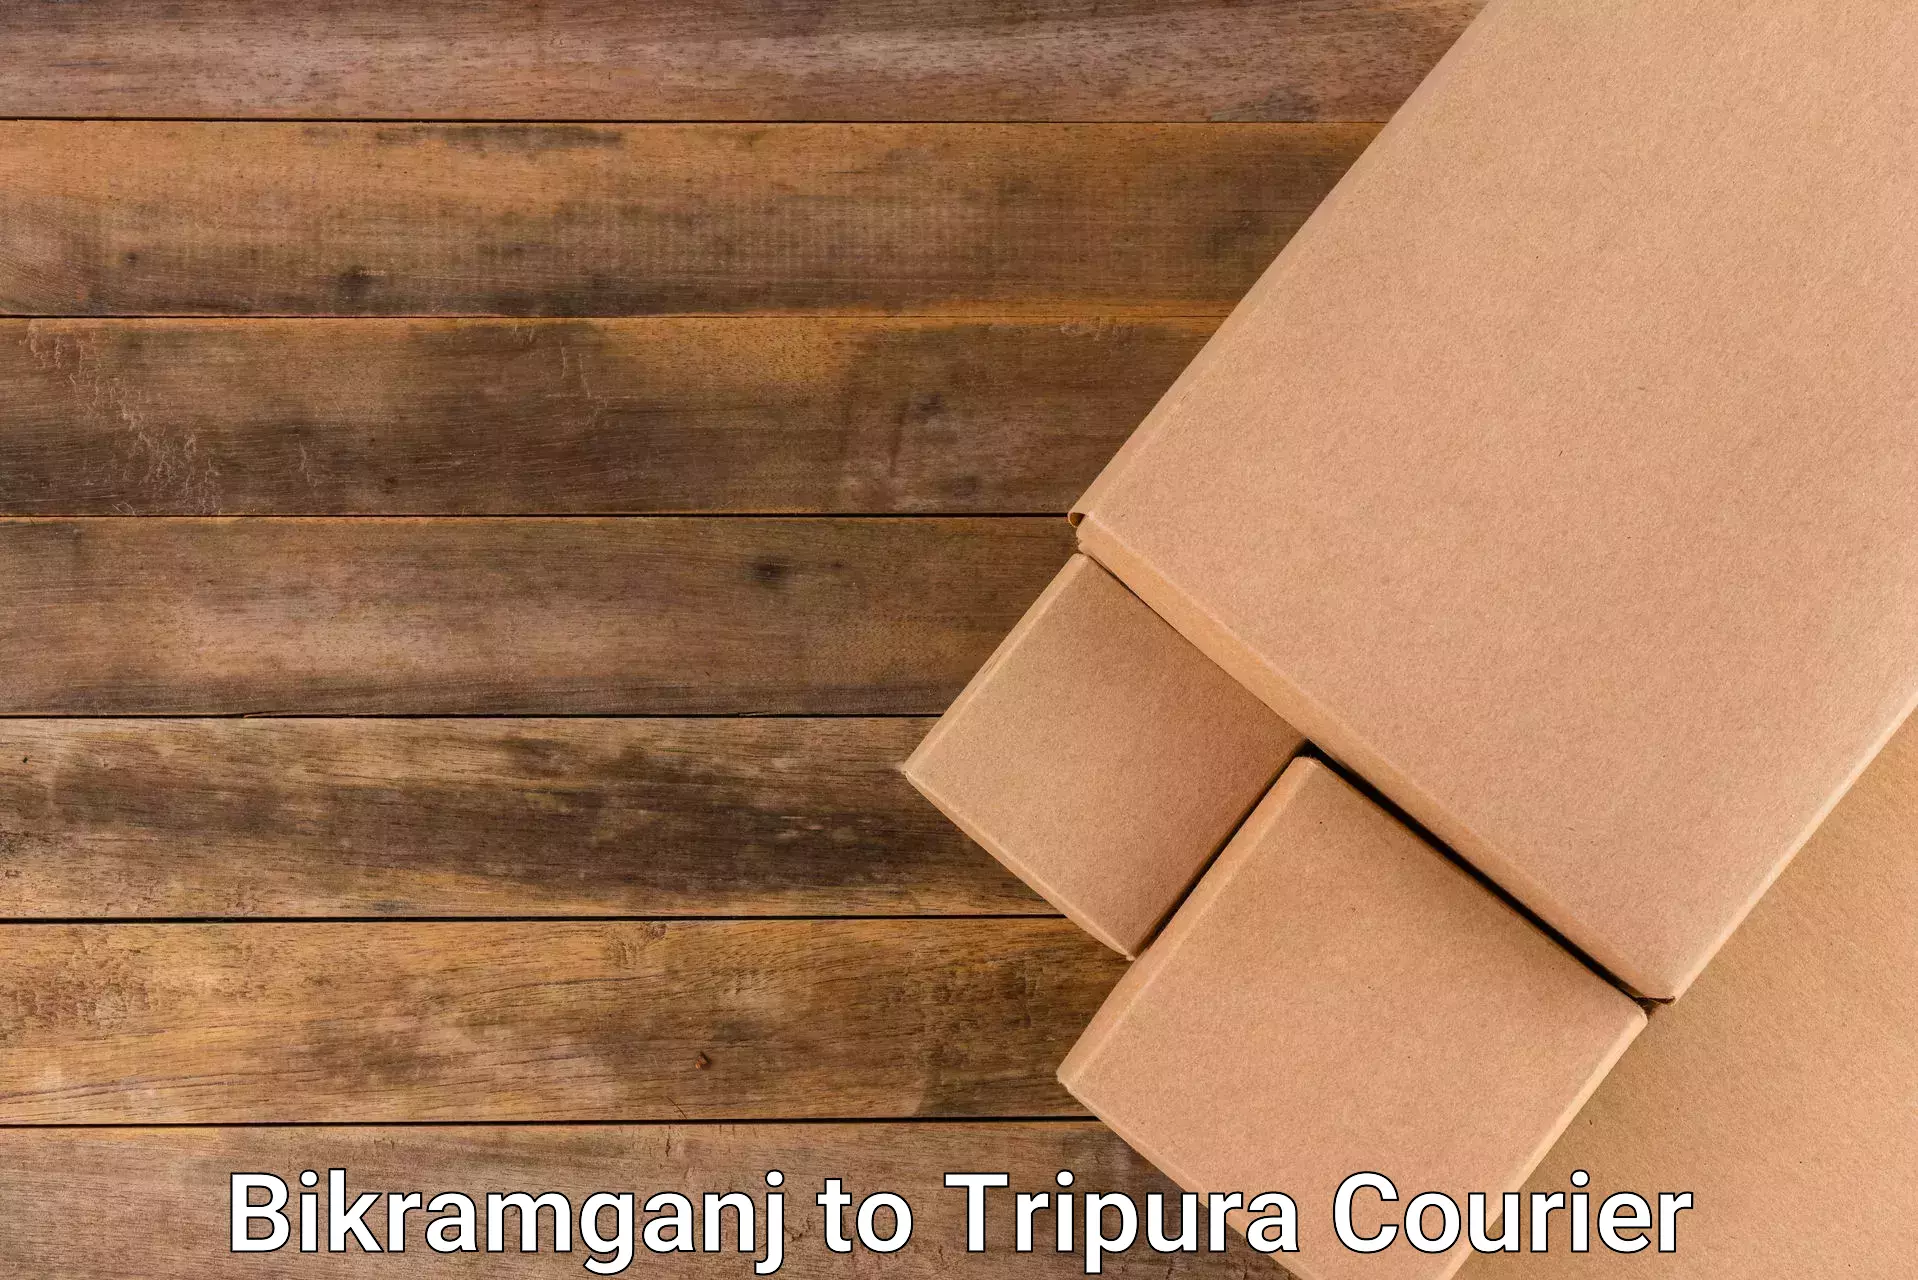 Large package courier Bikramganj to Tripura